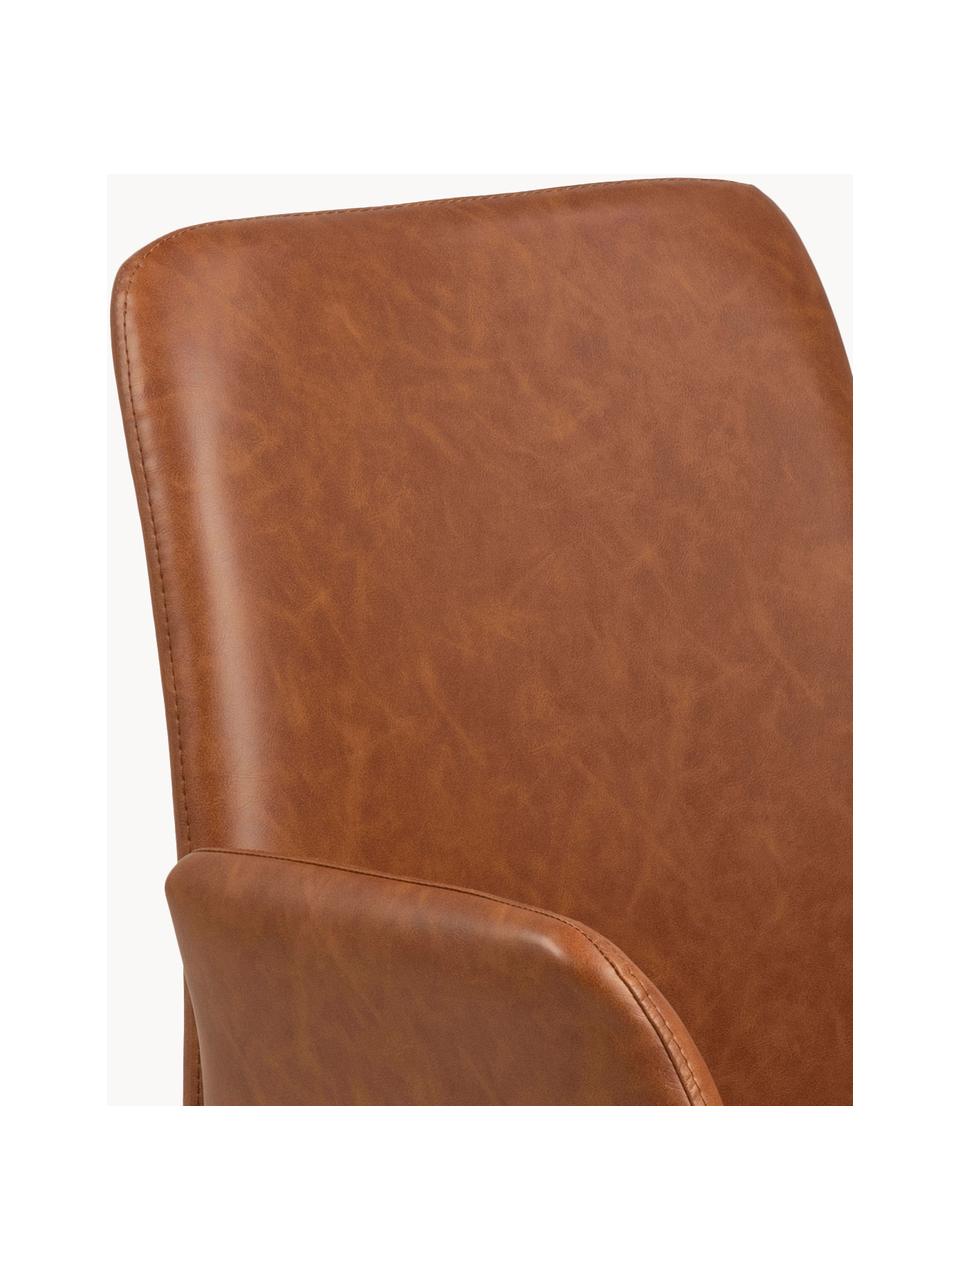 Krzesło obrotowe ze sztucznej skóry Naya, Tapicerka: sztuczna skóra Dzięki tka, Stelaż: metal malowany proszkowo, Jasnobrązowa sztuczna skóra, S 59 x G 59 cm